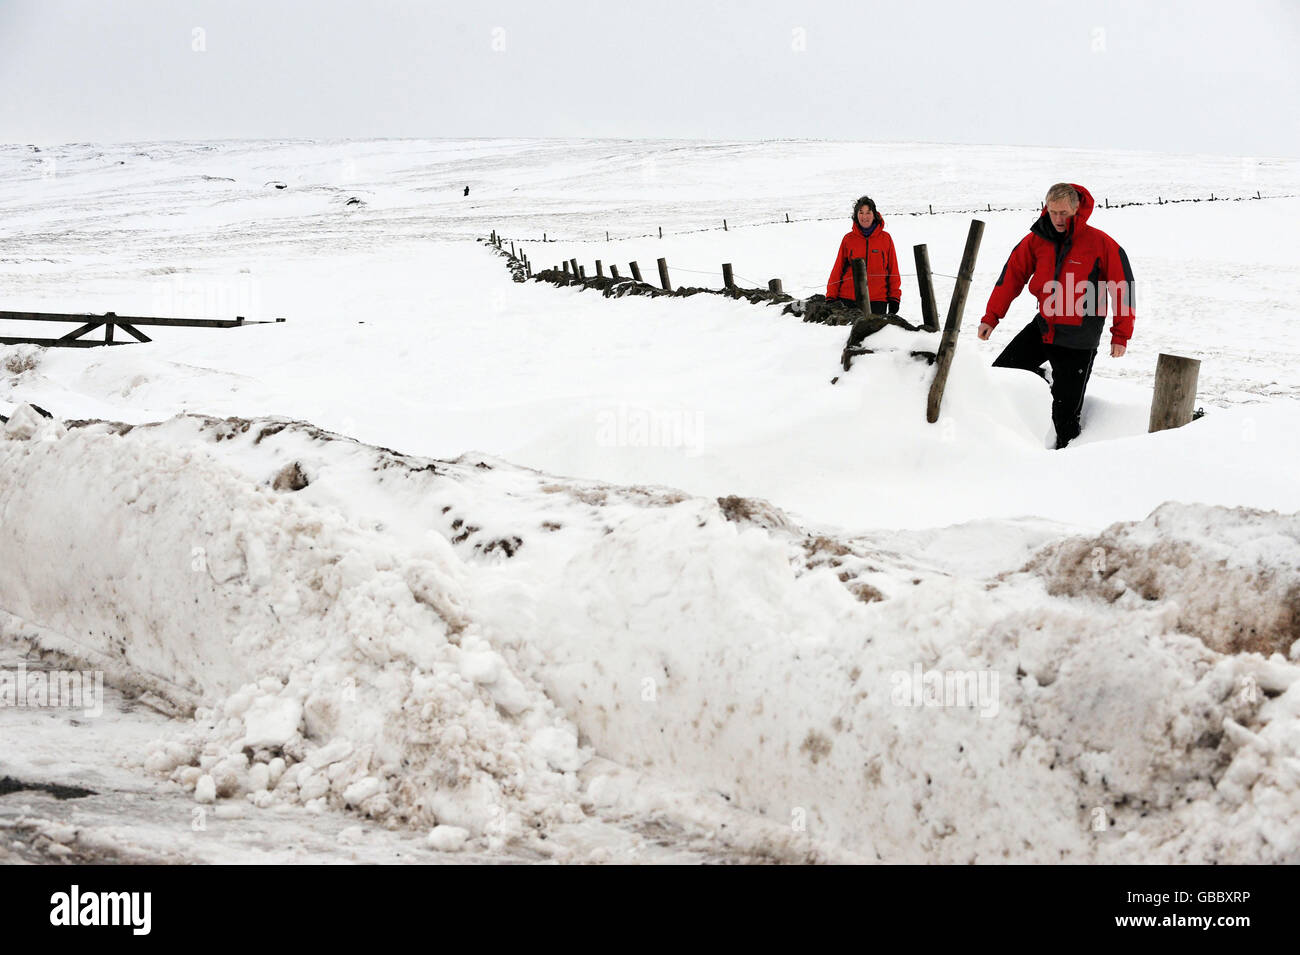 Les marcheurs brave la neige profonde près de Cowhill weardale, Co Durham alors que le temps hivernal continue de frapper des parties du Royaume-Uni. Banque D'Images